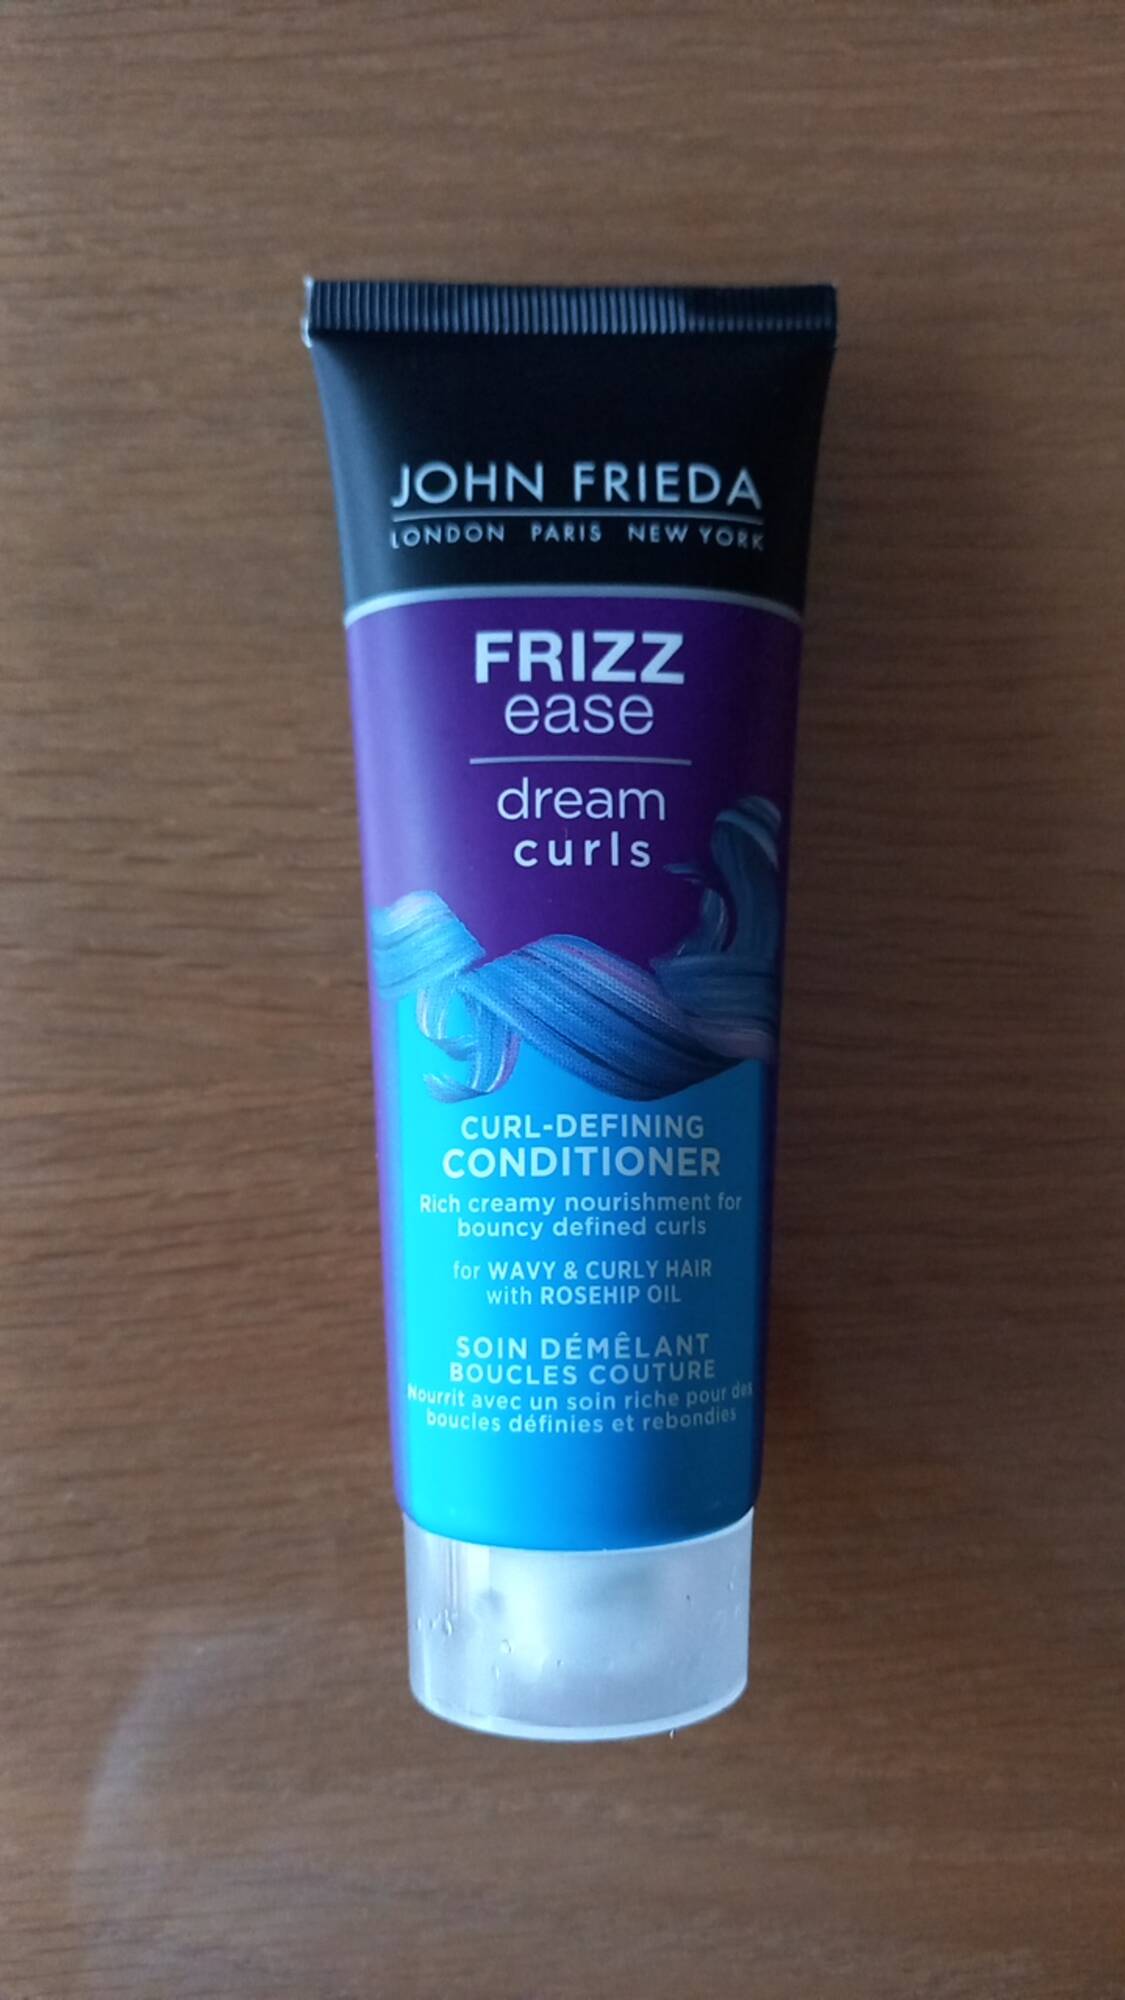 JOHN FRIEDA - Dream curls - Frizz ease